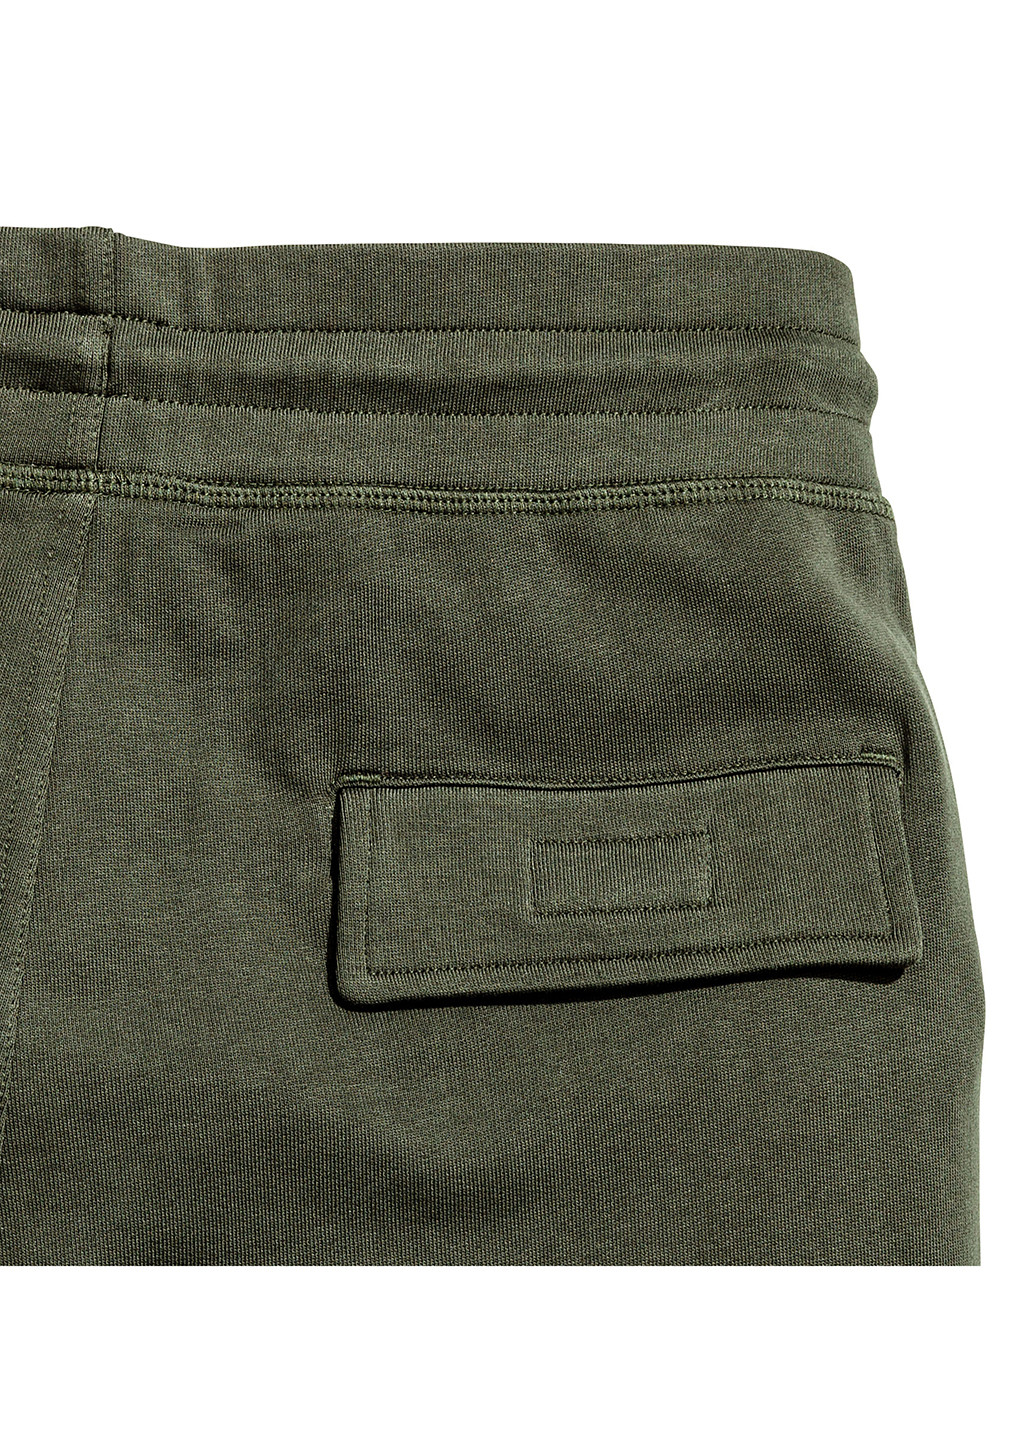 Зеленые кэжуал демисезонные джоггеры брюки H&M